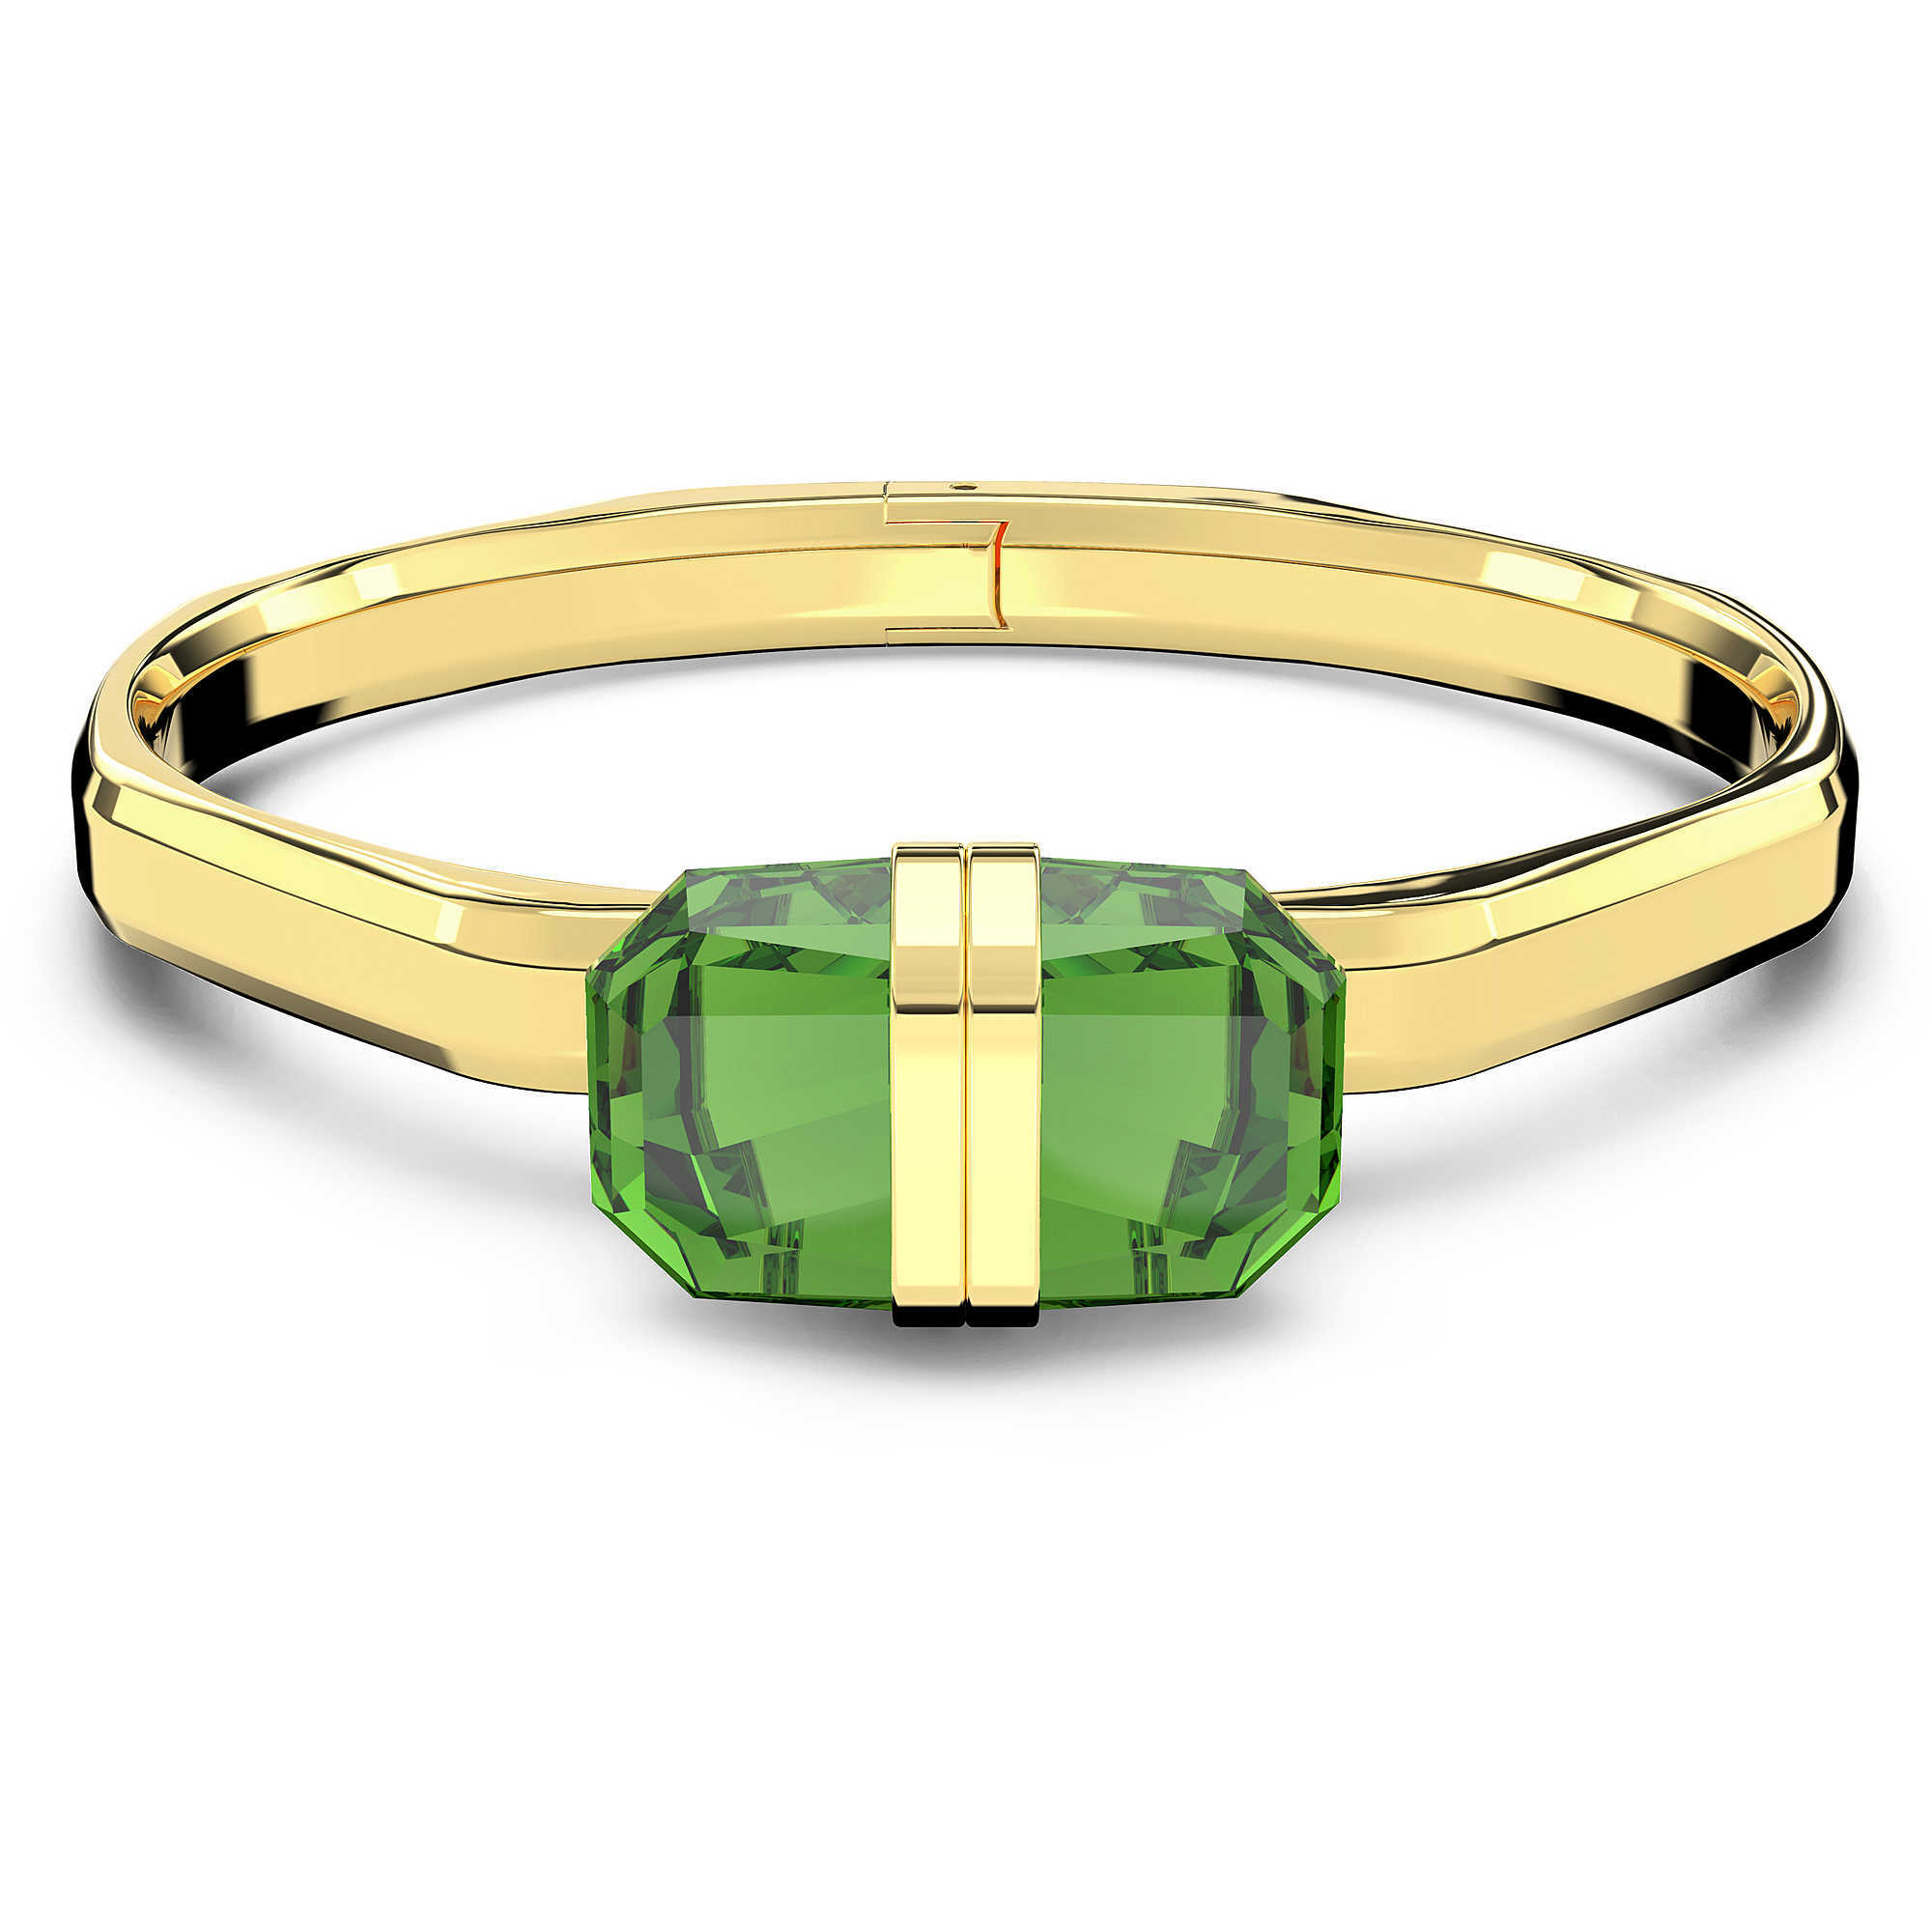 Swarovski Pozlacený pevný náramek s zelenými krystaly Lucent 5633624 L (6 x 5 cm)